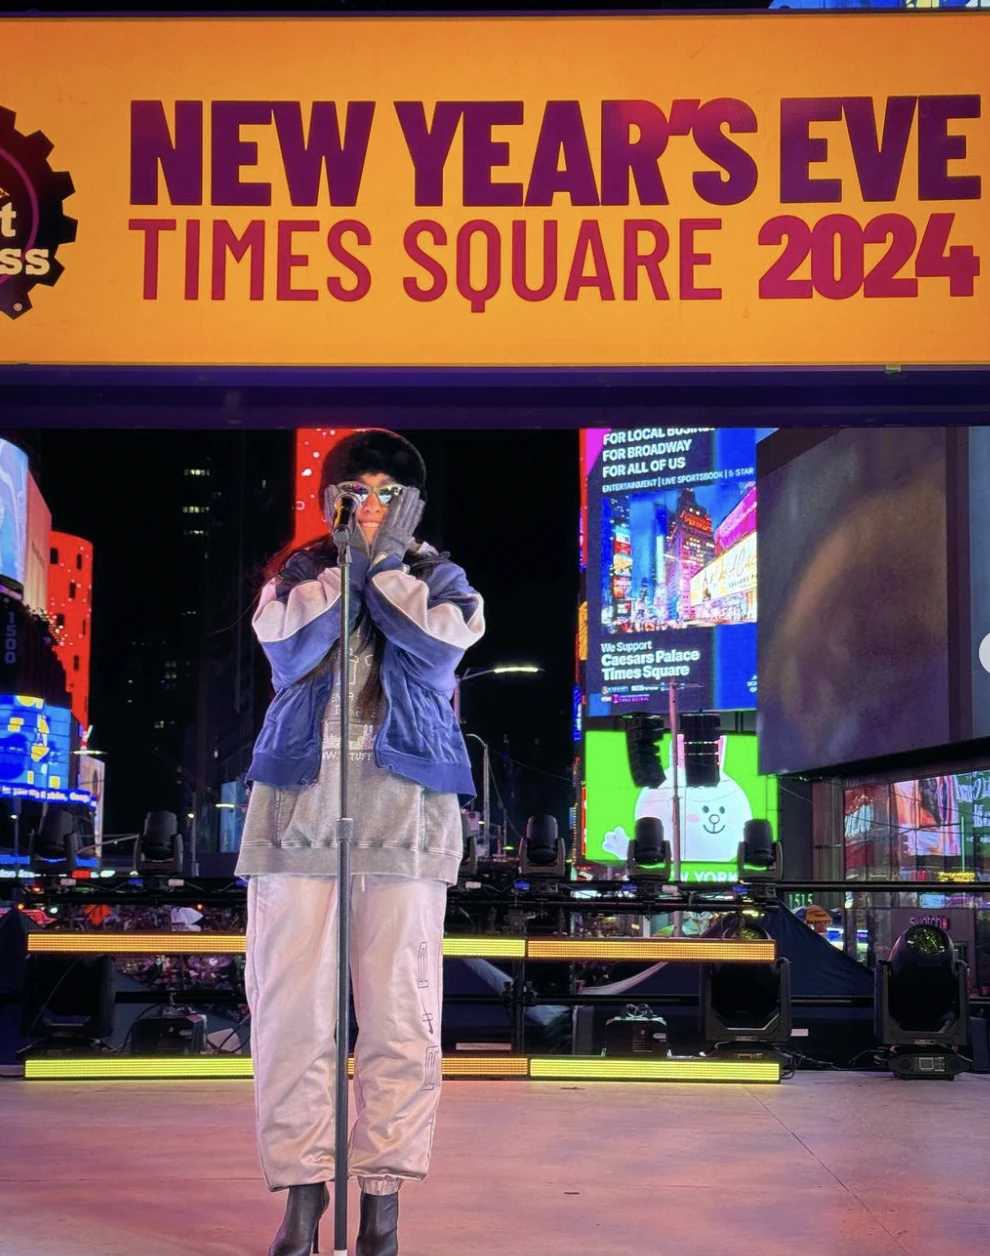 Brillando en Times Square en la clásica celebración de fin de año en Nueva York, llegando a miles de personas presentes en el lugar y a millones de espectadores alrededor de todo el mundo. 